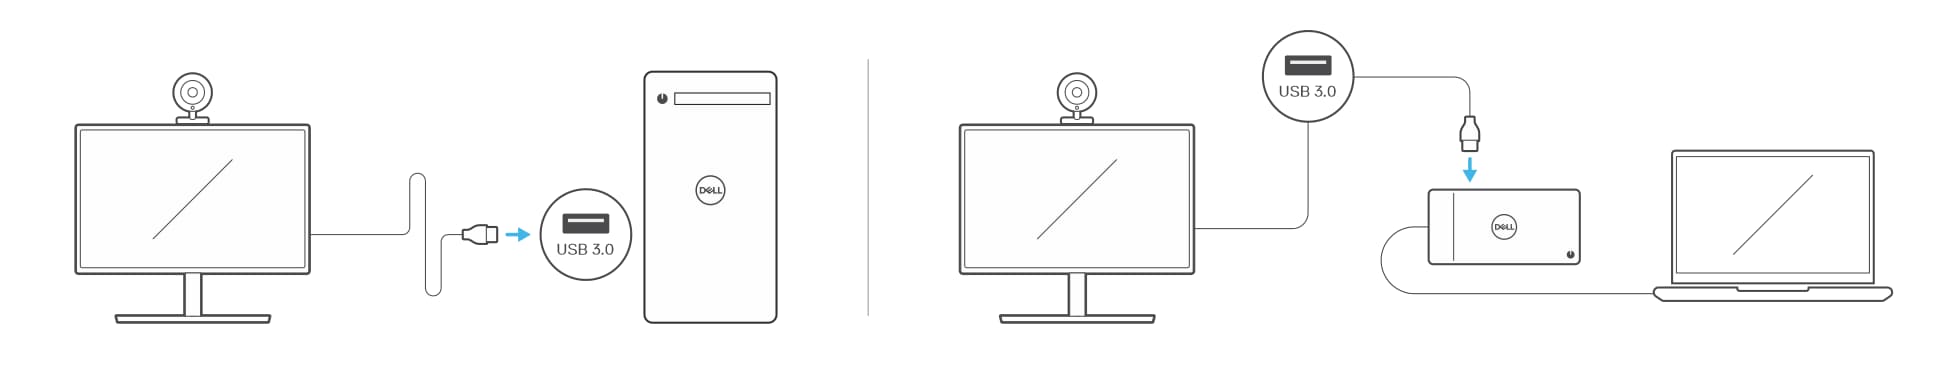 Connexion d’une webcam USB à un ordinateur de bureau et à un ordinateur portable